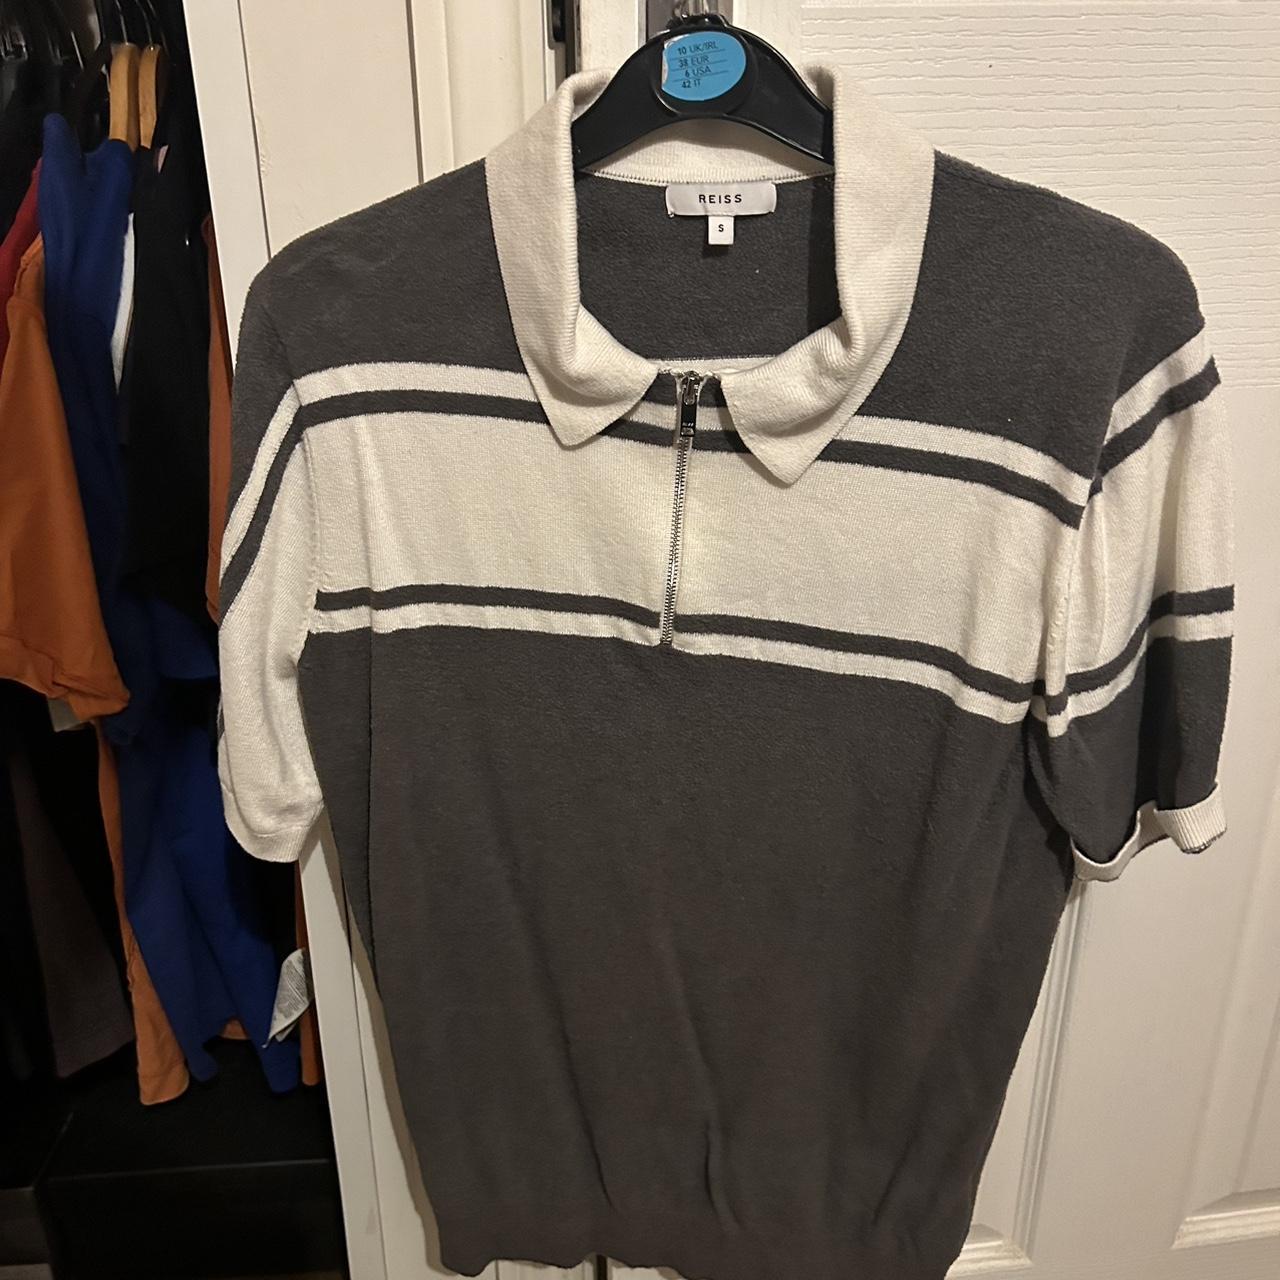 Reiss men’s shirt, polo shirt, t-shirt size small - Depop